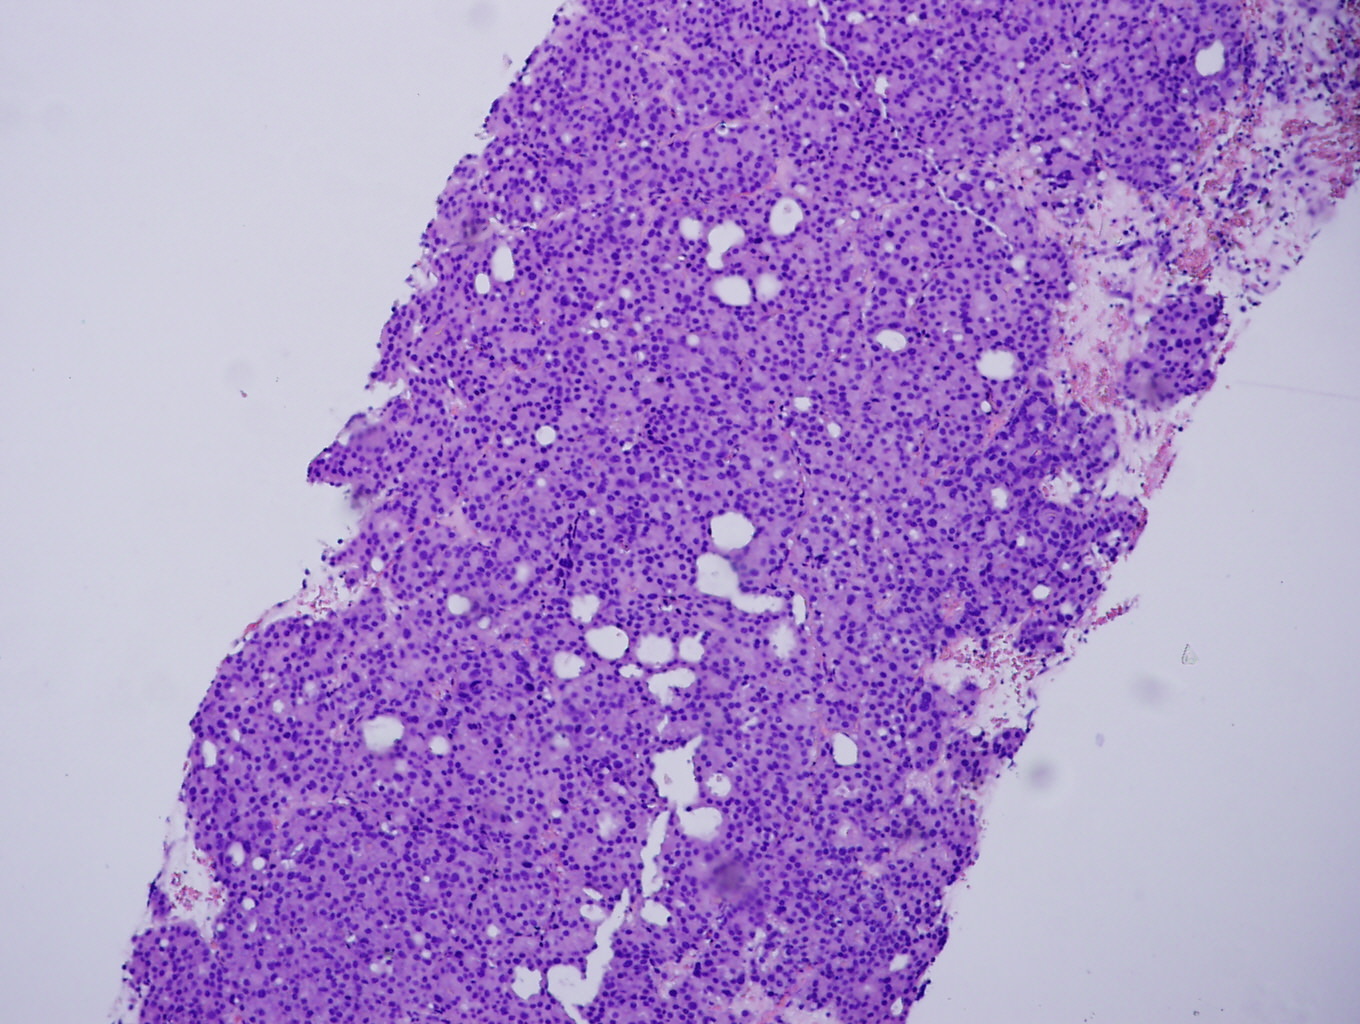 prostatic adenocarcinoma pathology outlines